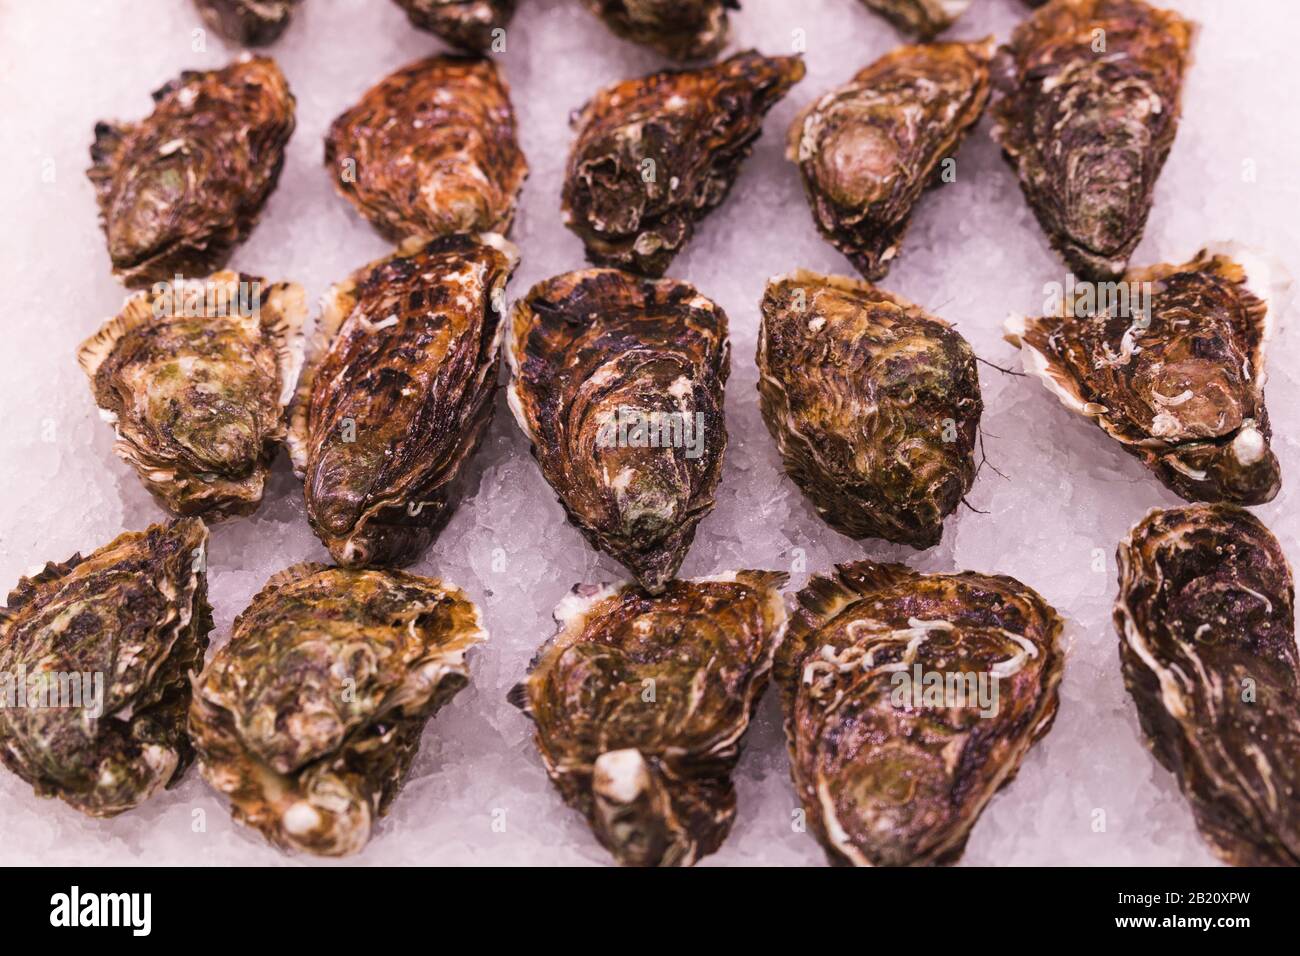 Photo de stock d'un gros plan de beaucoup d'huîtres sur une base de glace dans un marché espagnol Banque D'Images